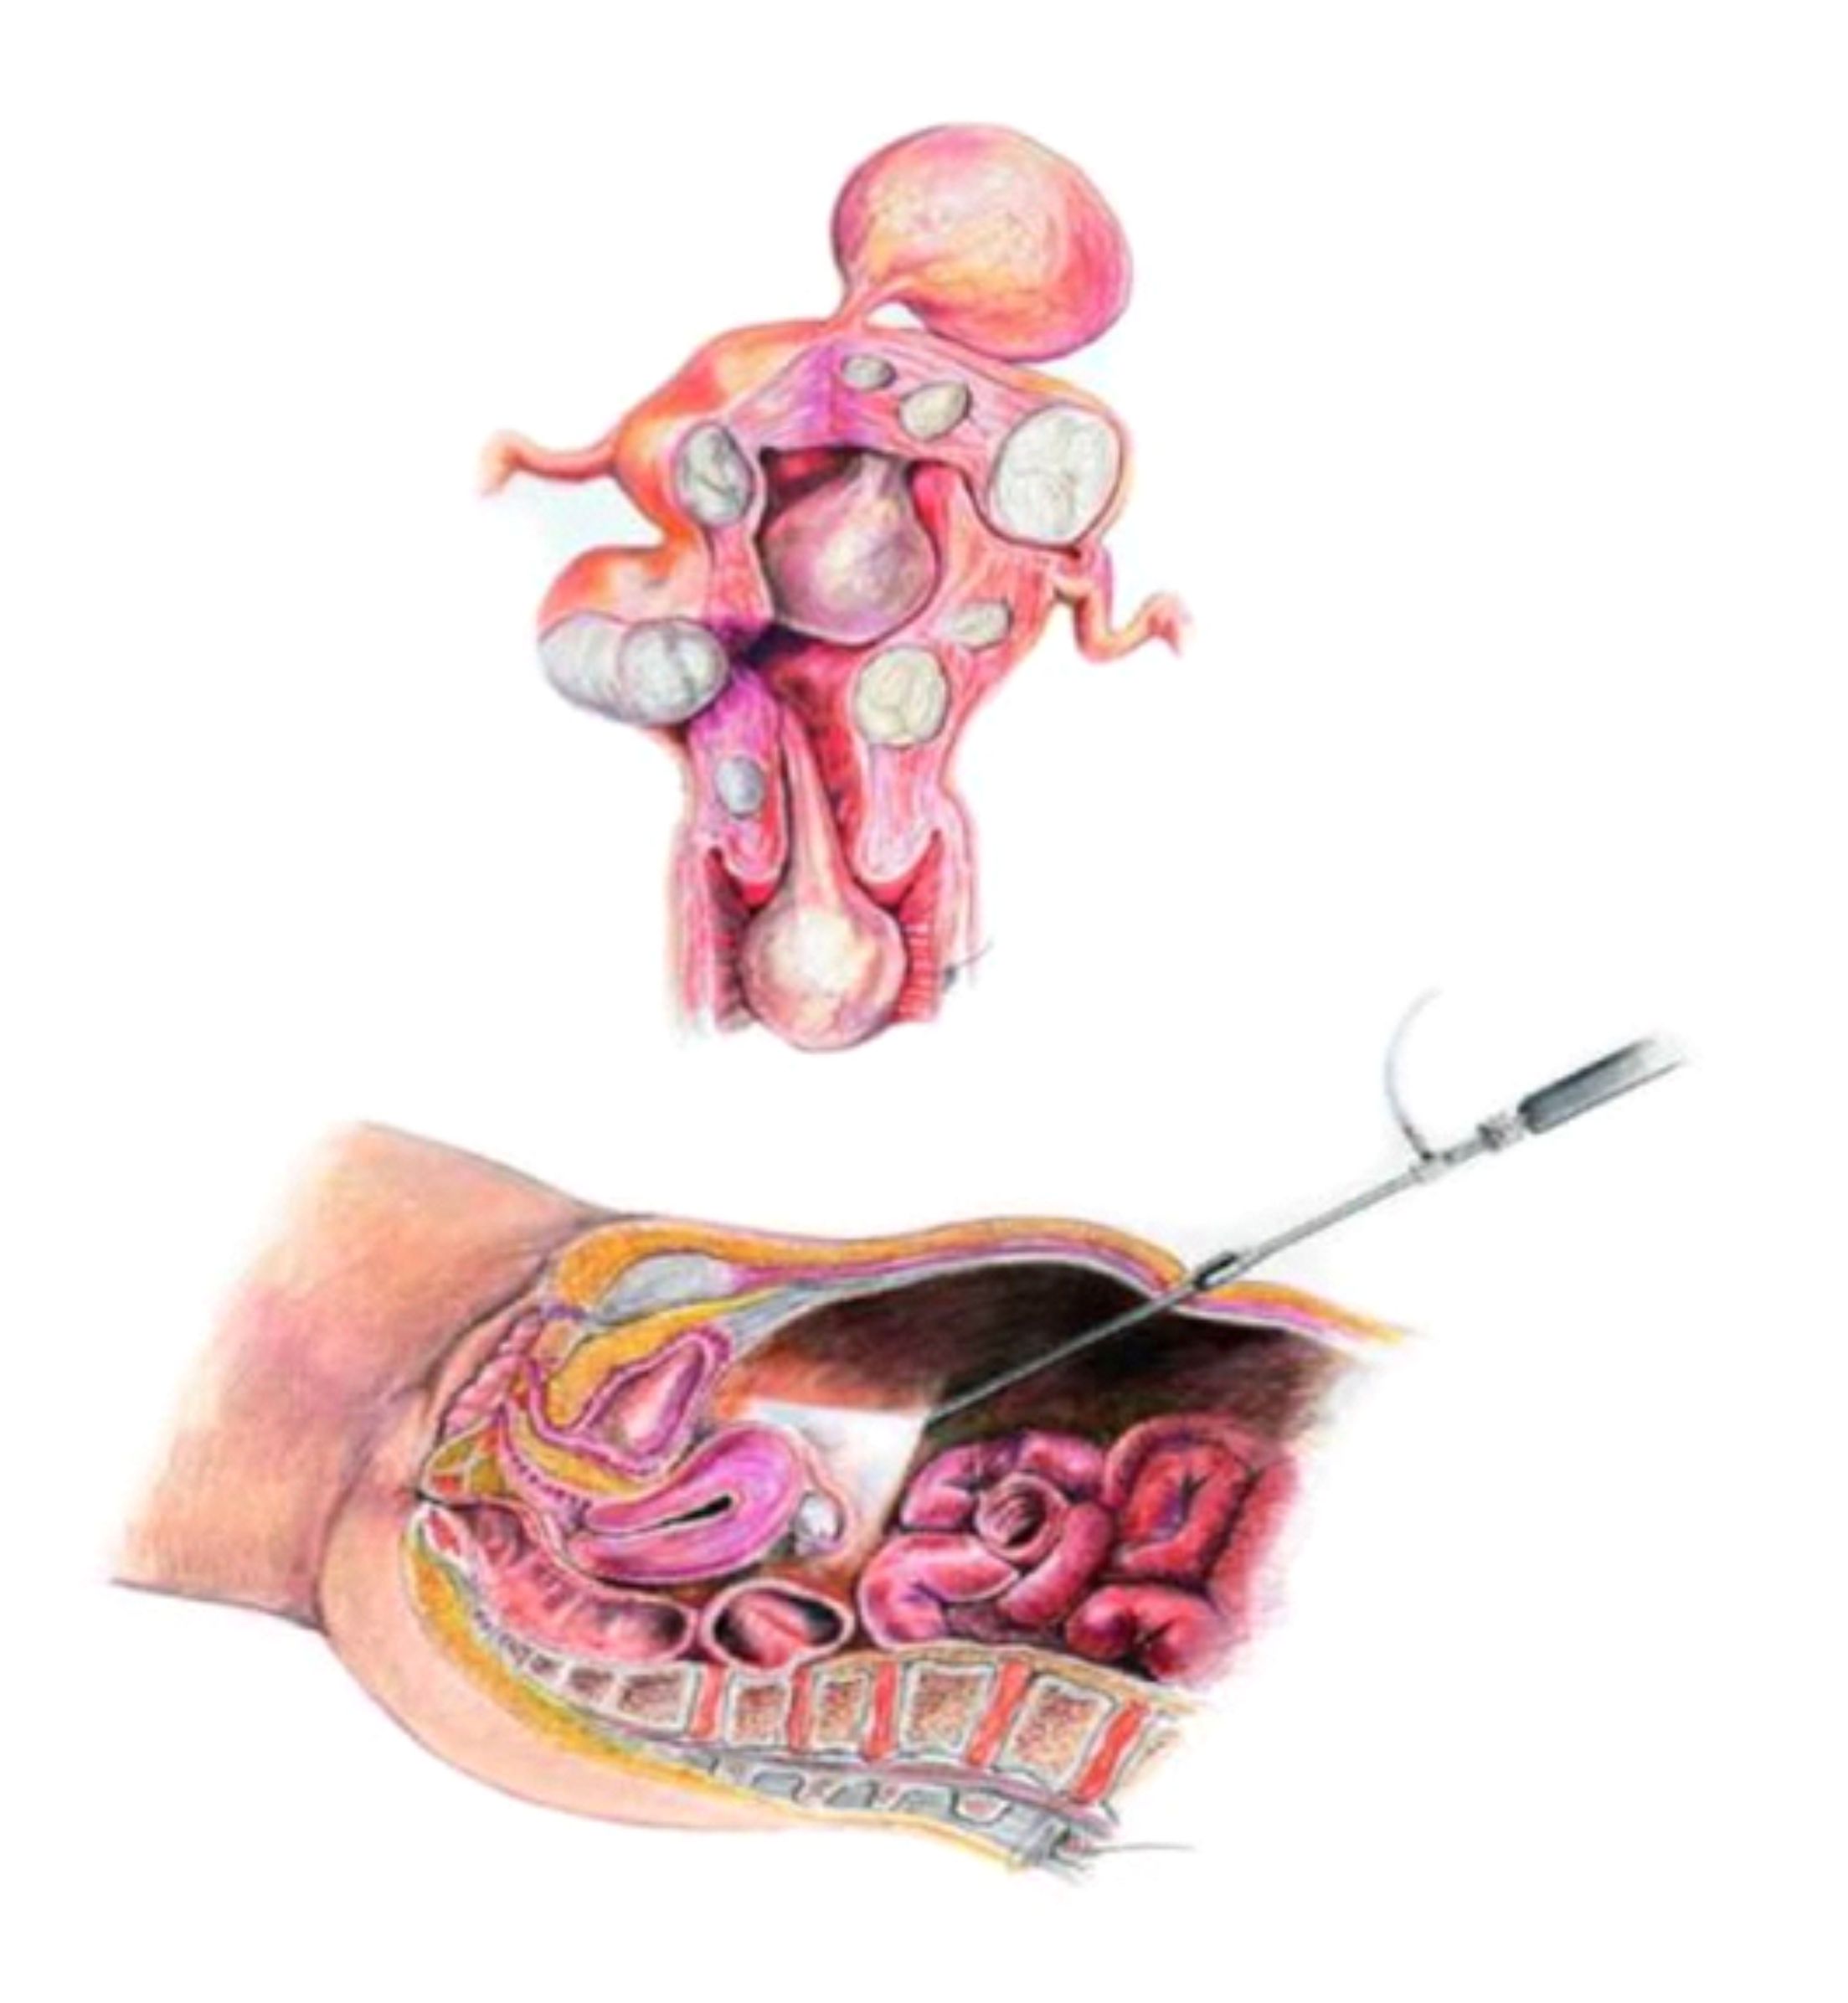 Dr Duarte Miguel Ribeiro - Figura superior mostrando diferentes tipos de miomas uterinos